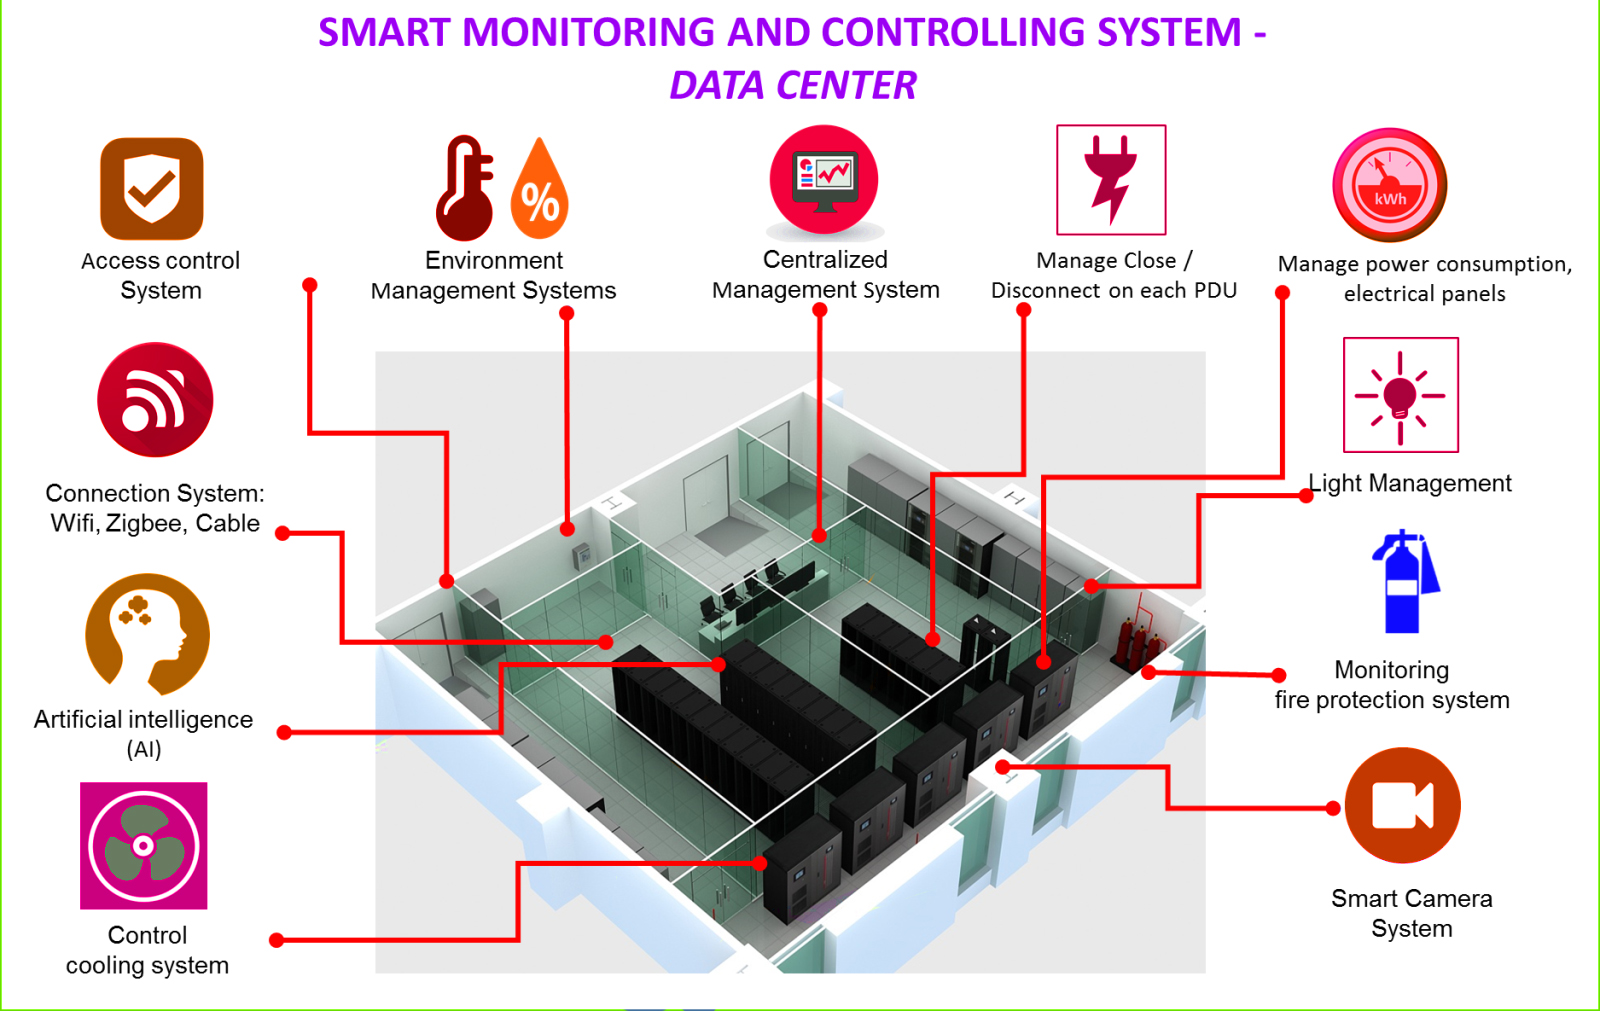 3 Types of Server room & Datacenter monitoring alert system